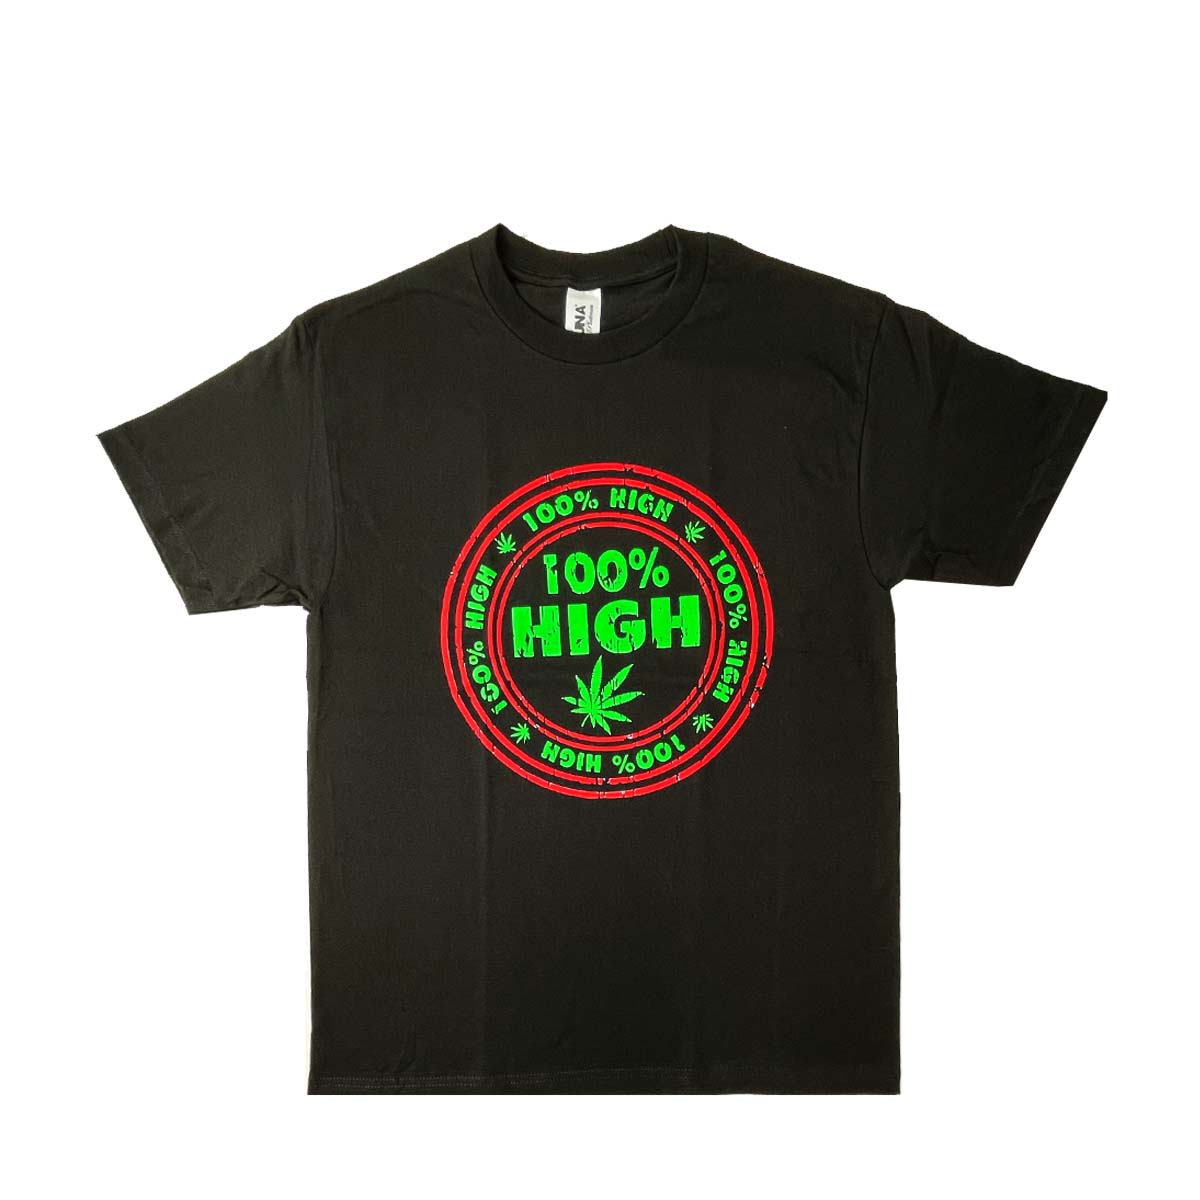 High 100% Cotton T-Shirt, Pack of 5 Units, S, M, L, XL, XXL